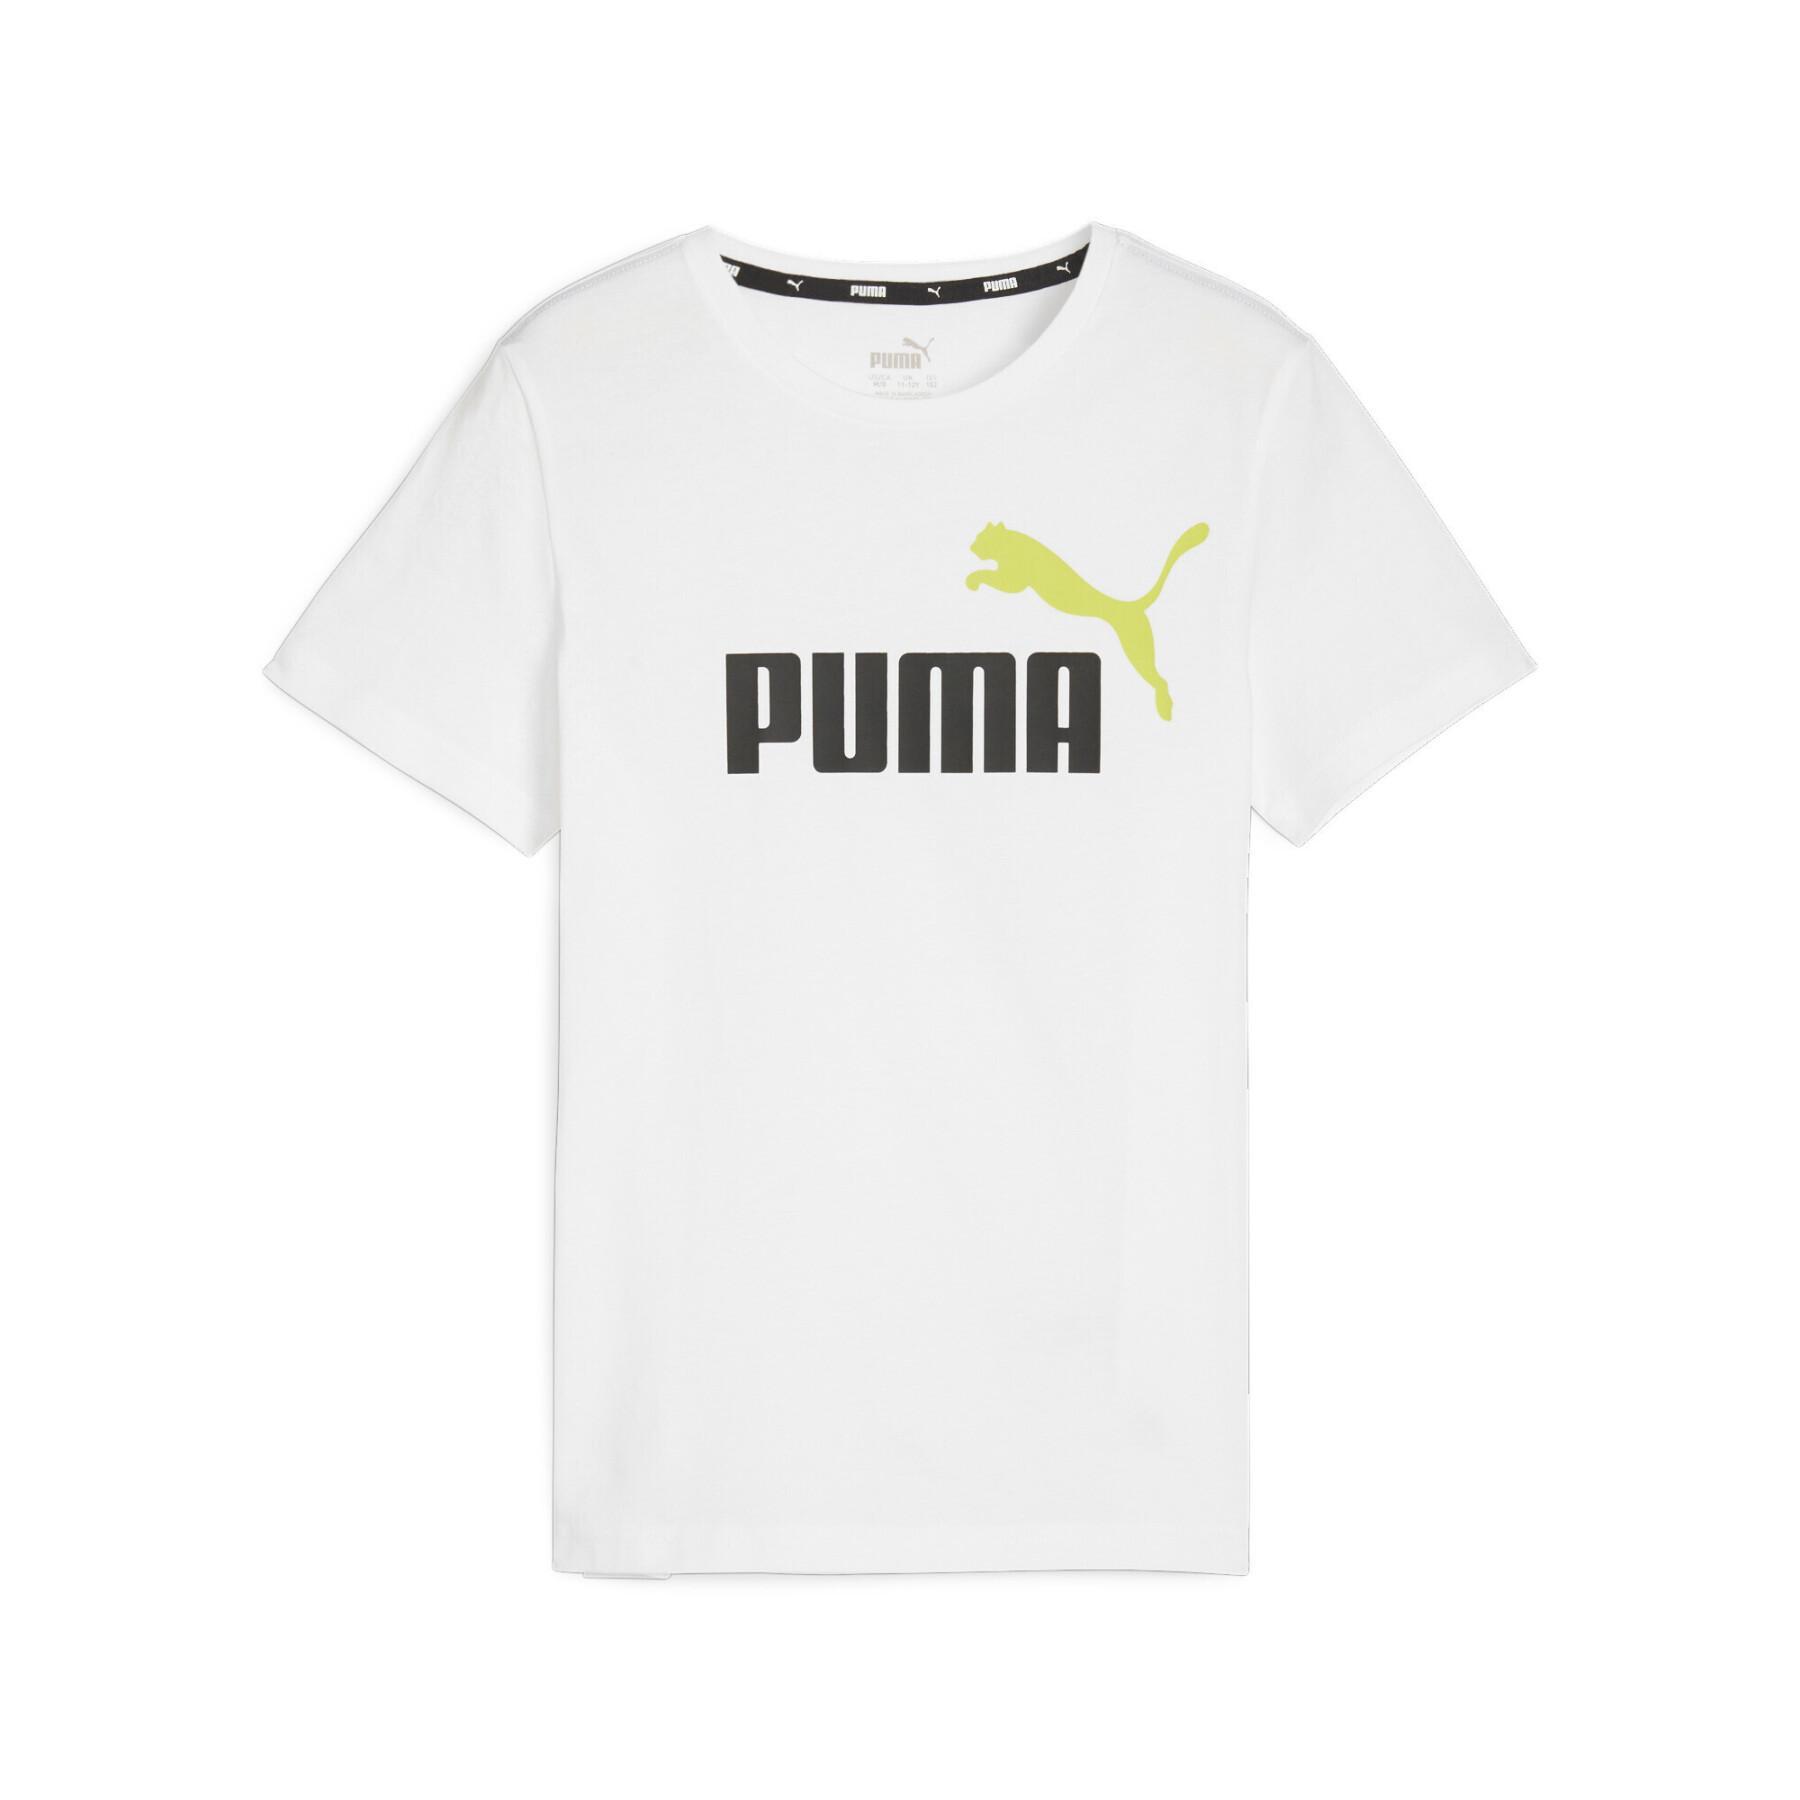 Kinder-T-shirt Puma Essential + 2 Col Logo